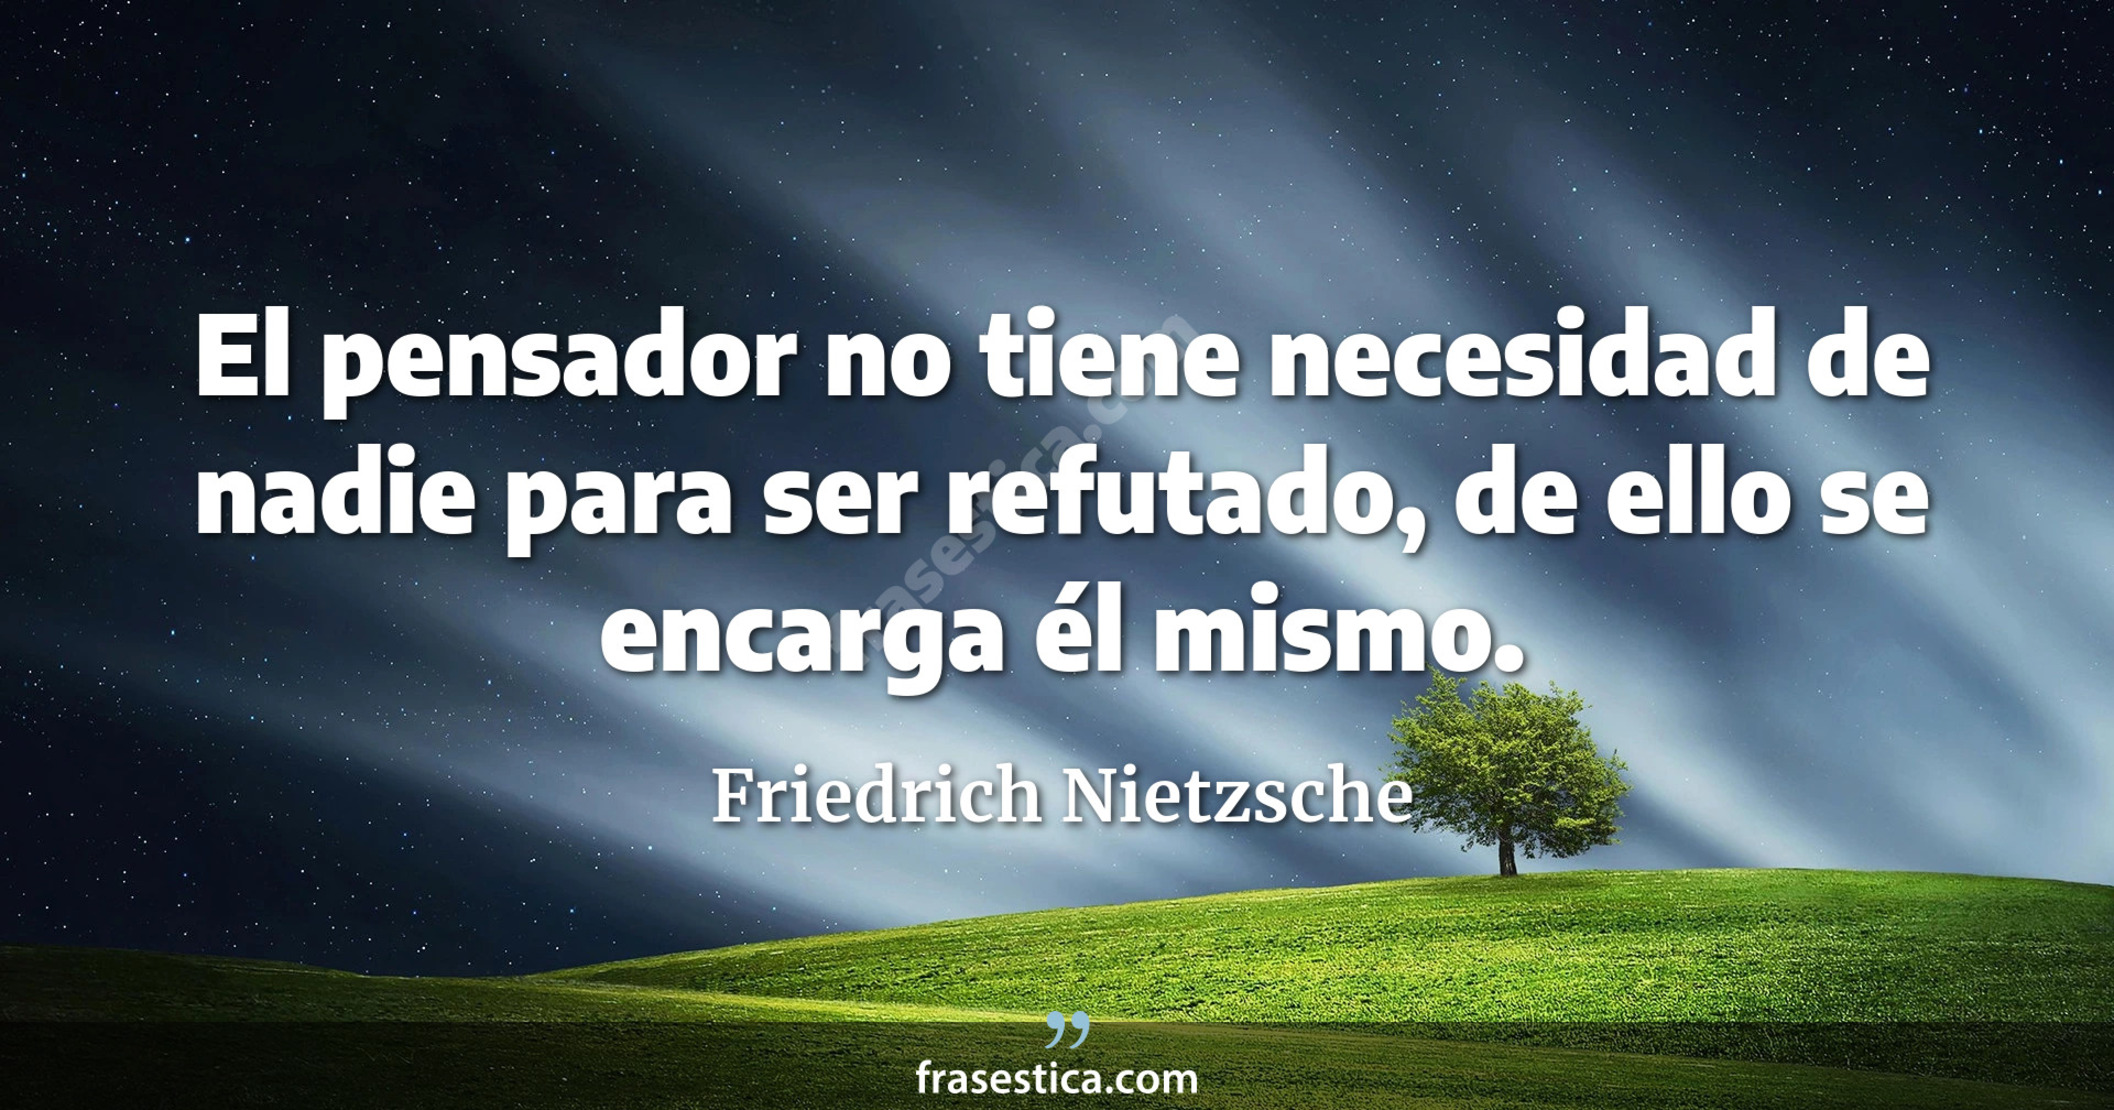 El pensador no tiene necesidad de nadie para ser refutado, de ello se encarga él mismo. - Friedrich Nietzsche